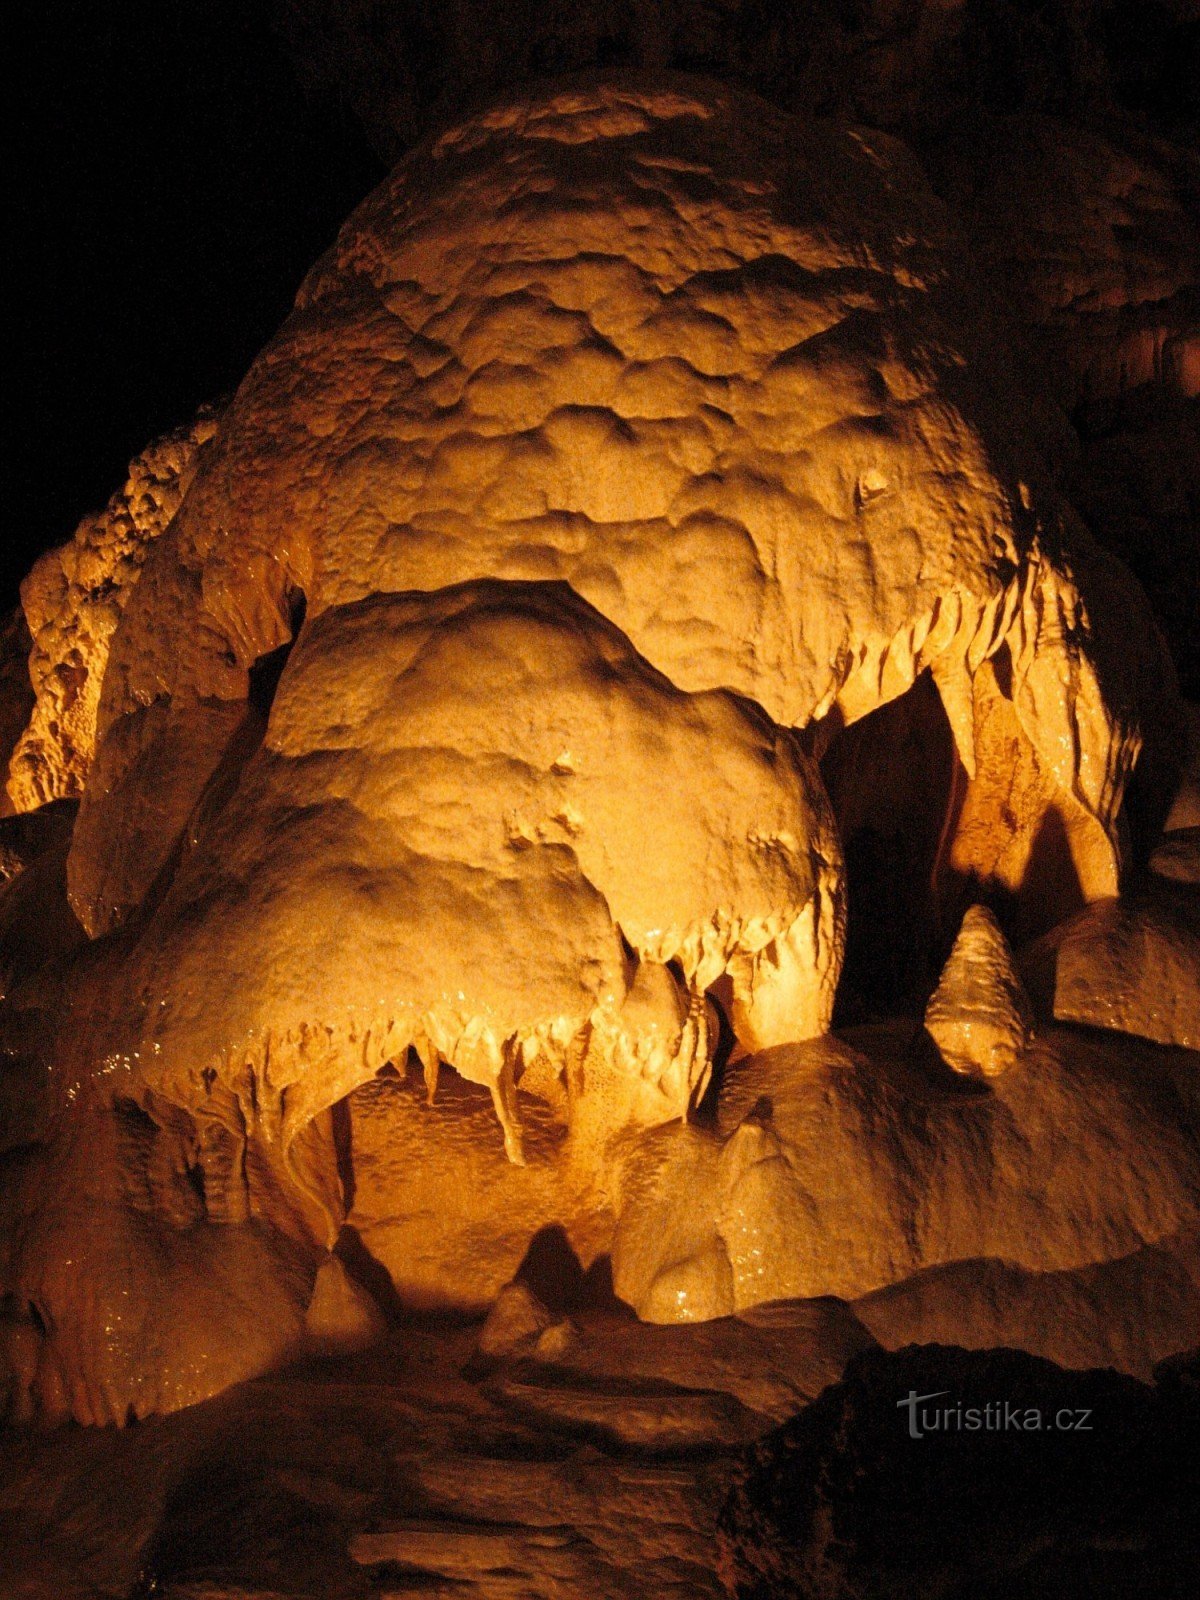 Cuevas de Javoříč